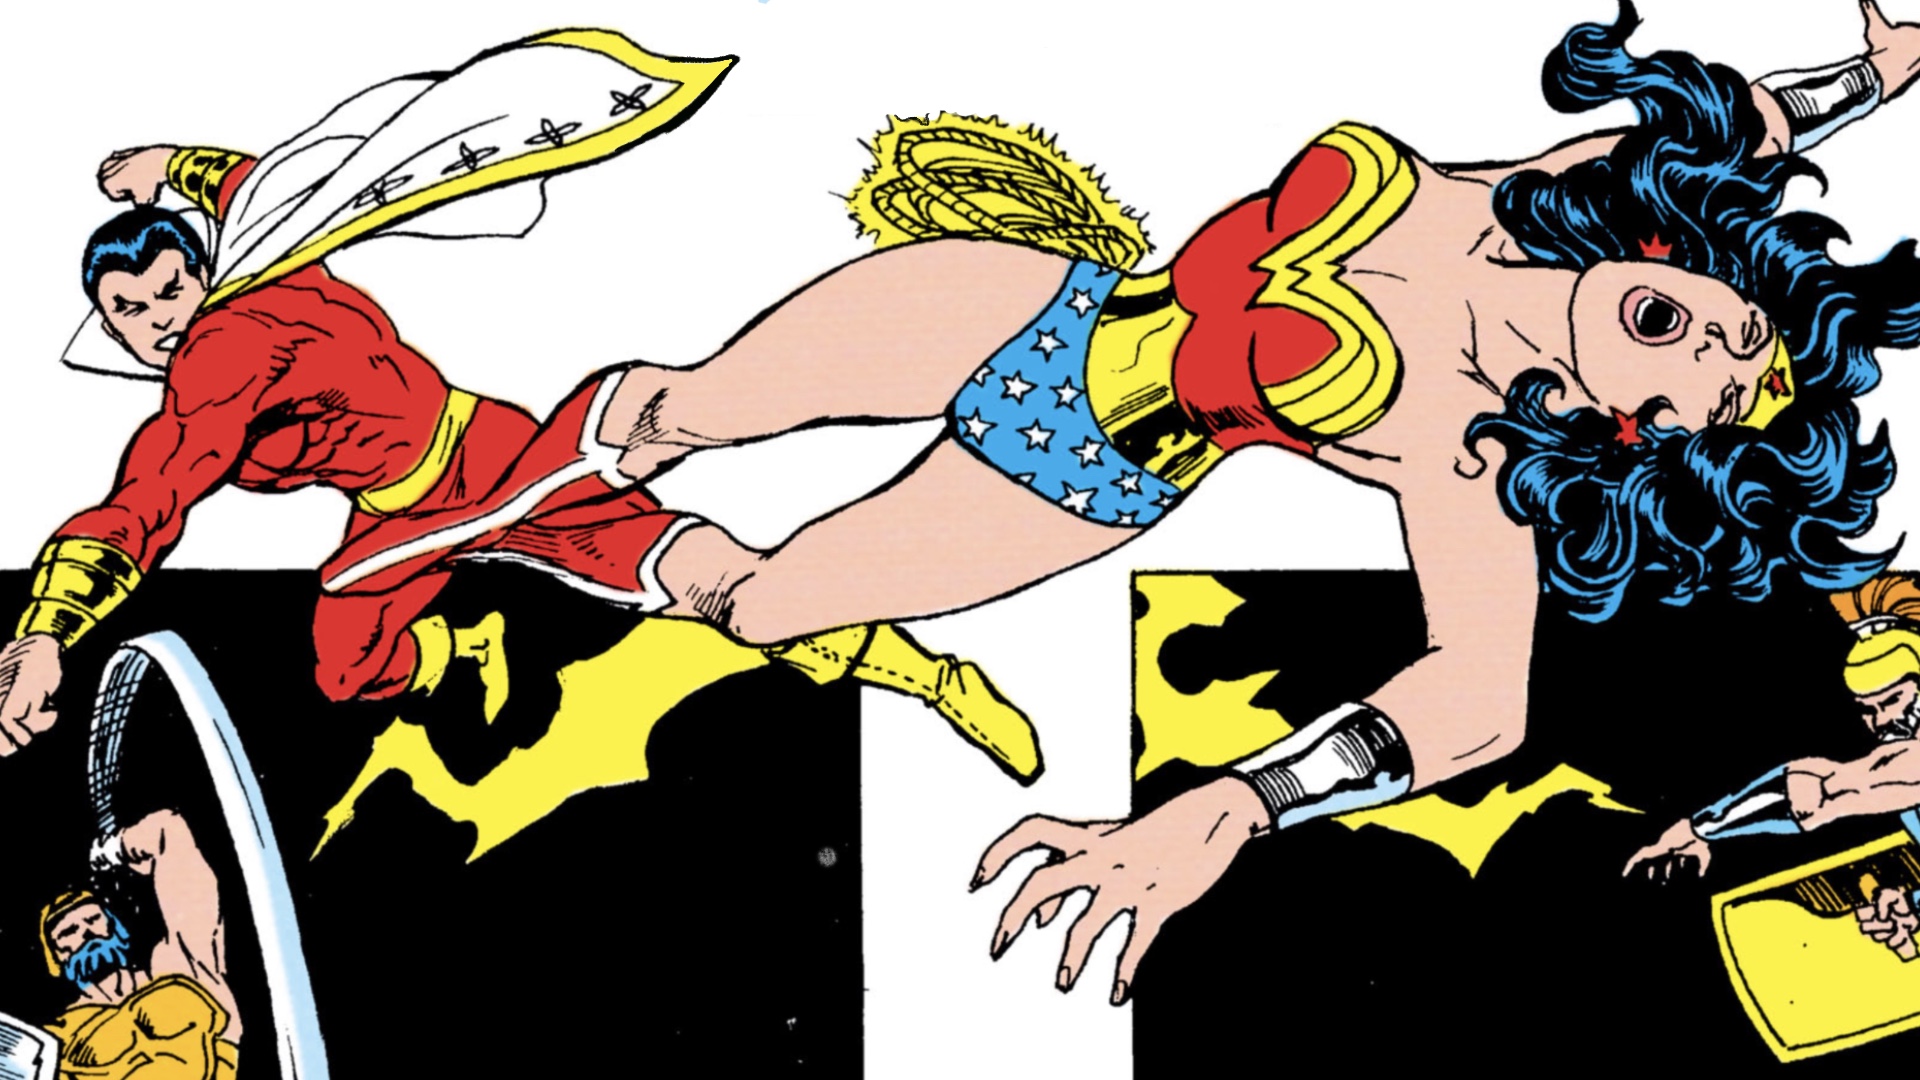 SHAZAM 2 FURY OF THE GODS Shazam wants to Date Wonder Woman